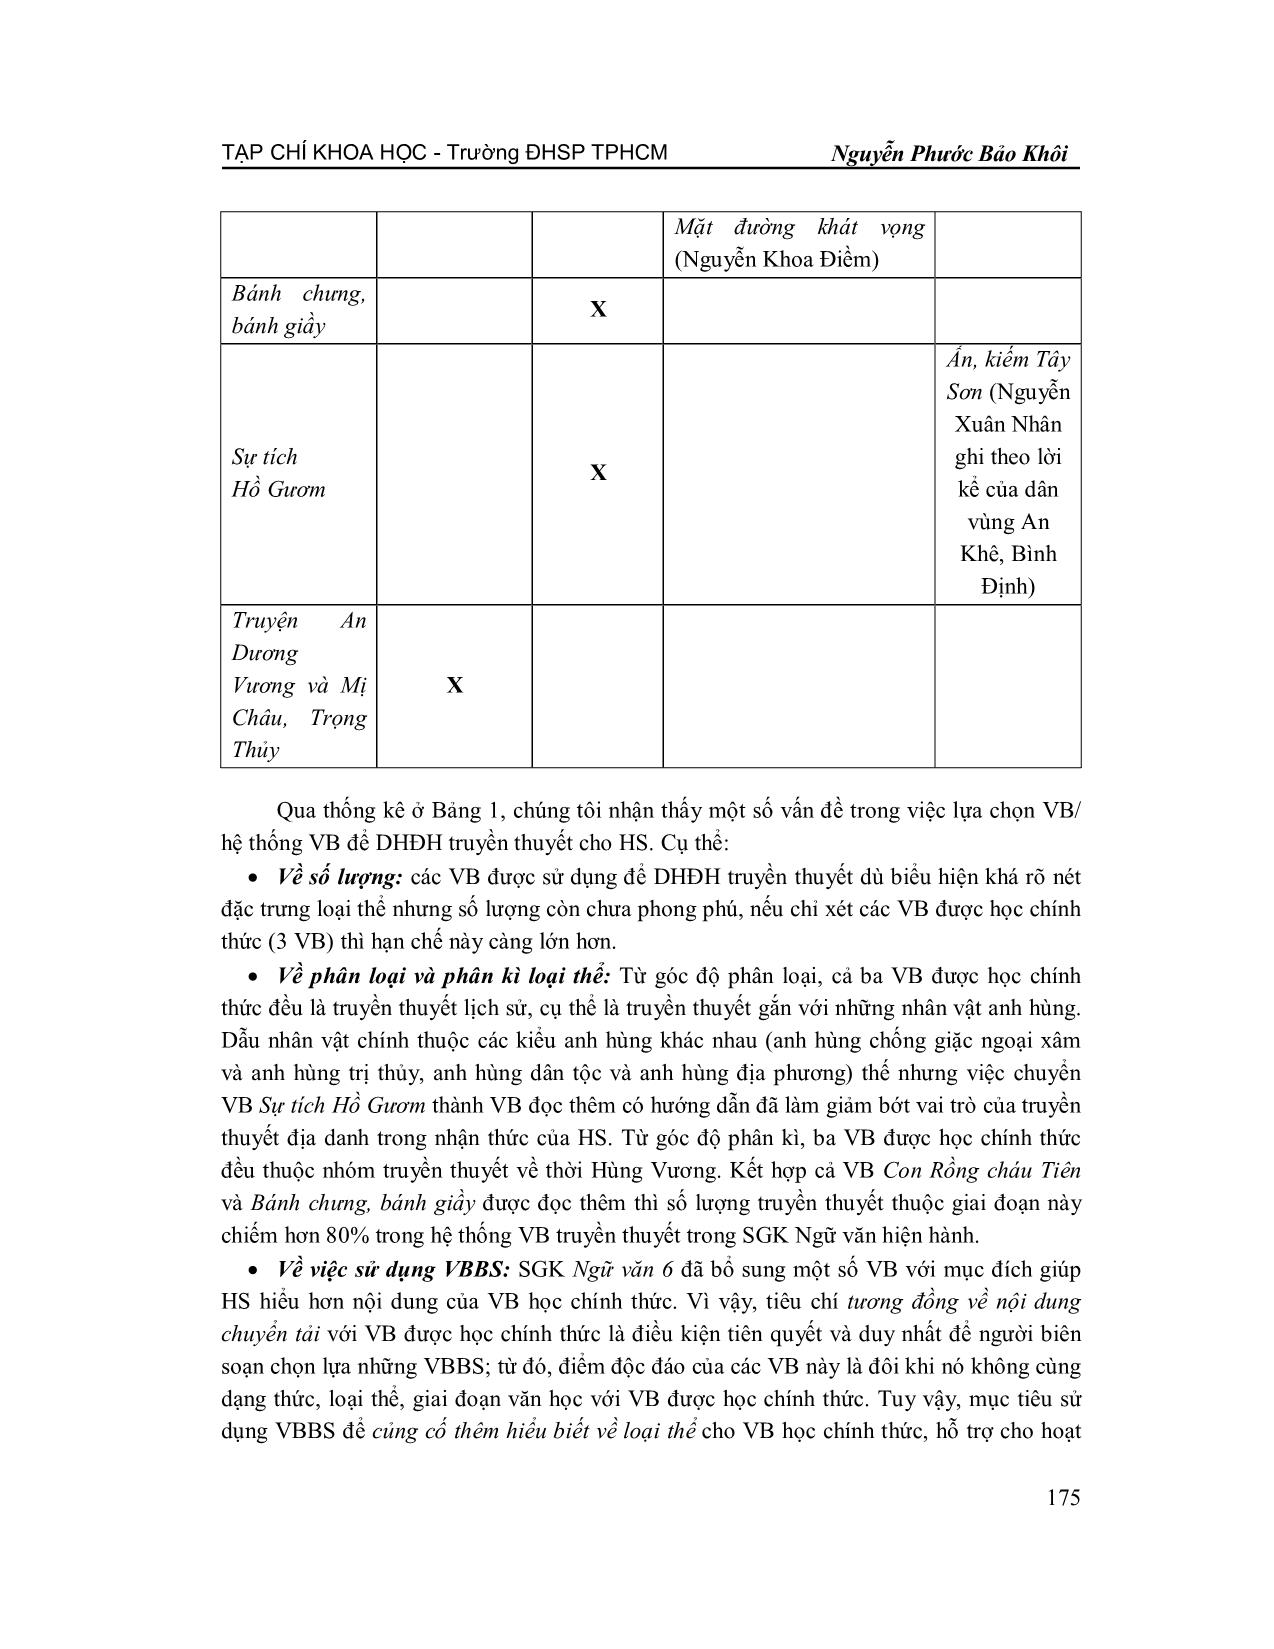 Sử dụng hệ thống văn bản trong dạy học đọc hiểu truyền thuyết trang 3